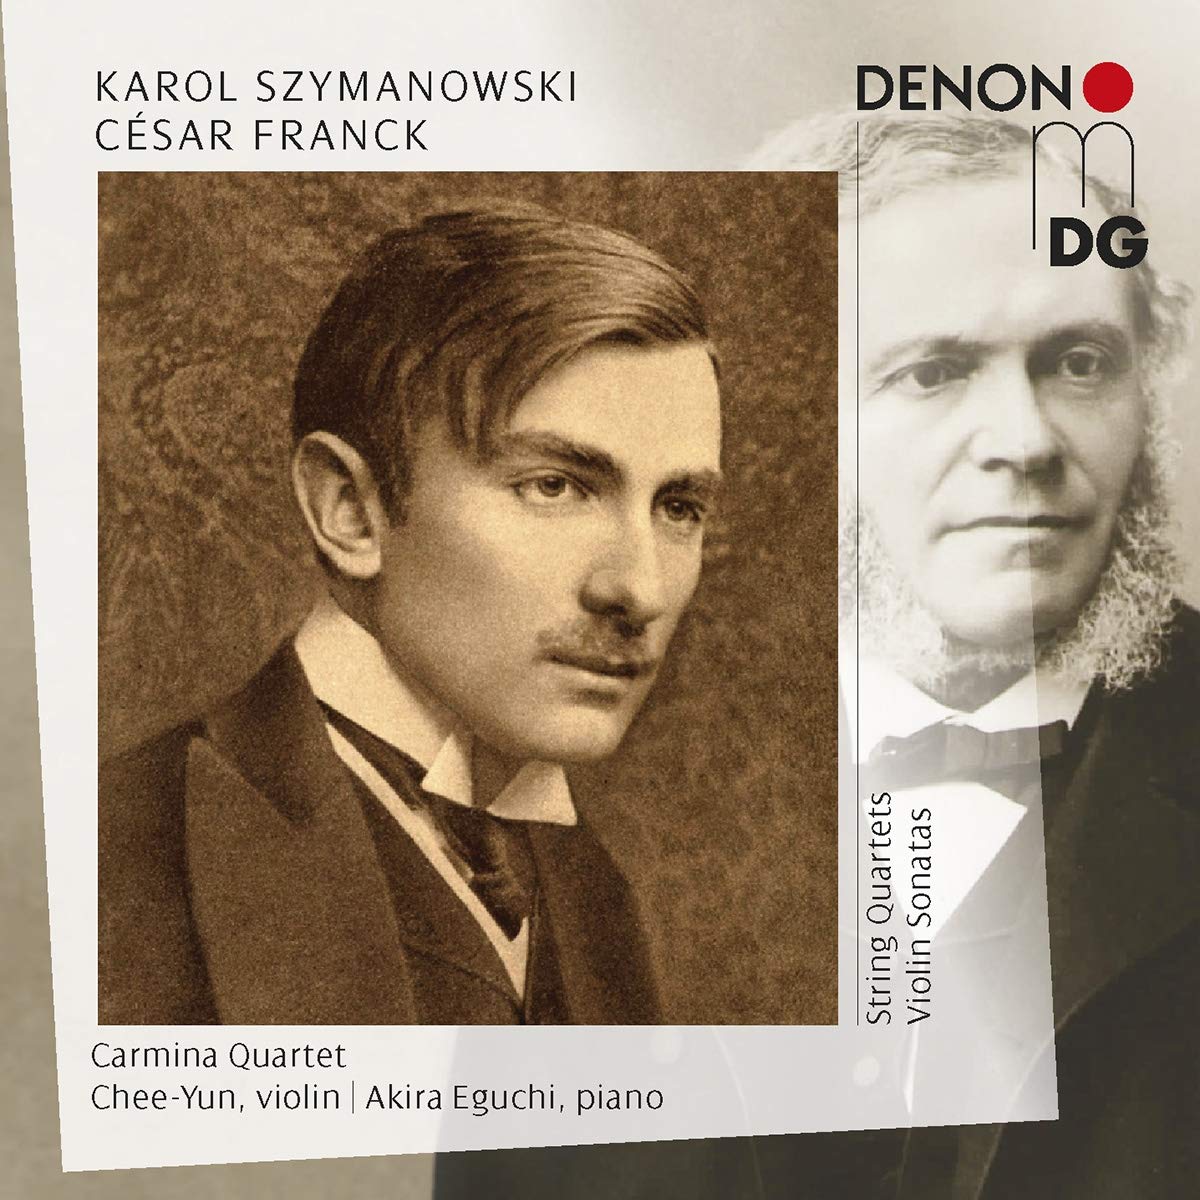 Audio Cd Karol Szymanowski Cesar Franck - String Quartets & Violin Sonatas 2 Cd NUOVO SIGILLATO EDIZIONE DEL SUBITO DISPONIBILE